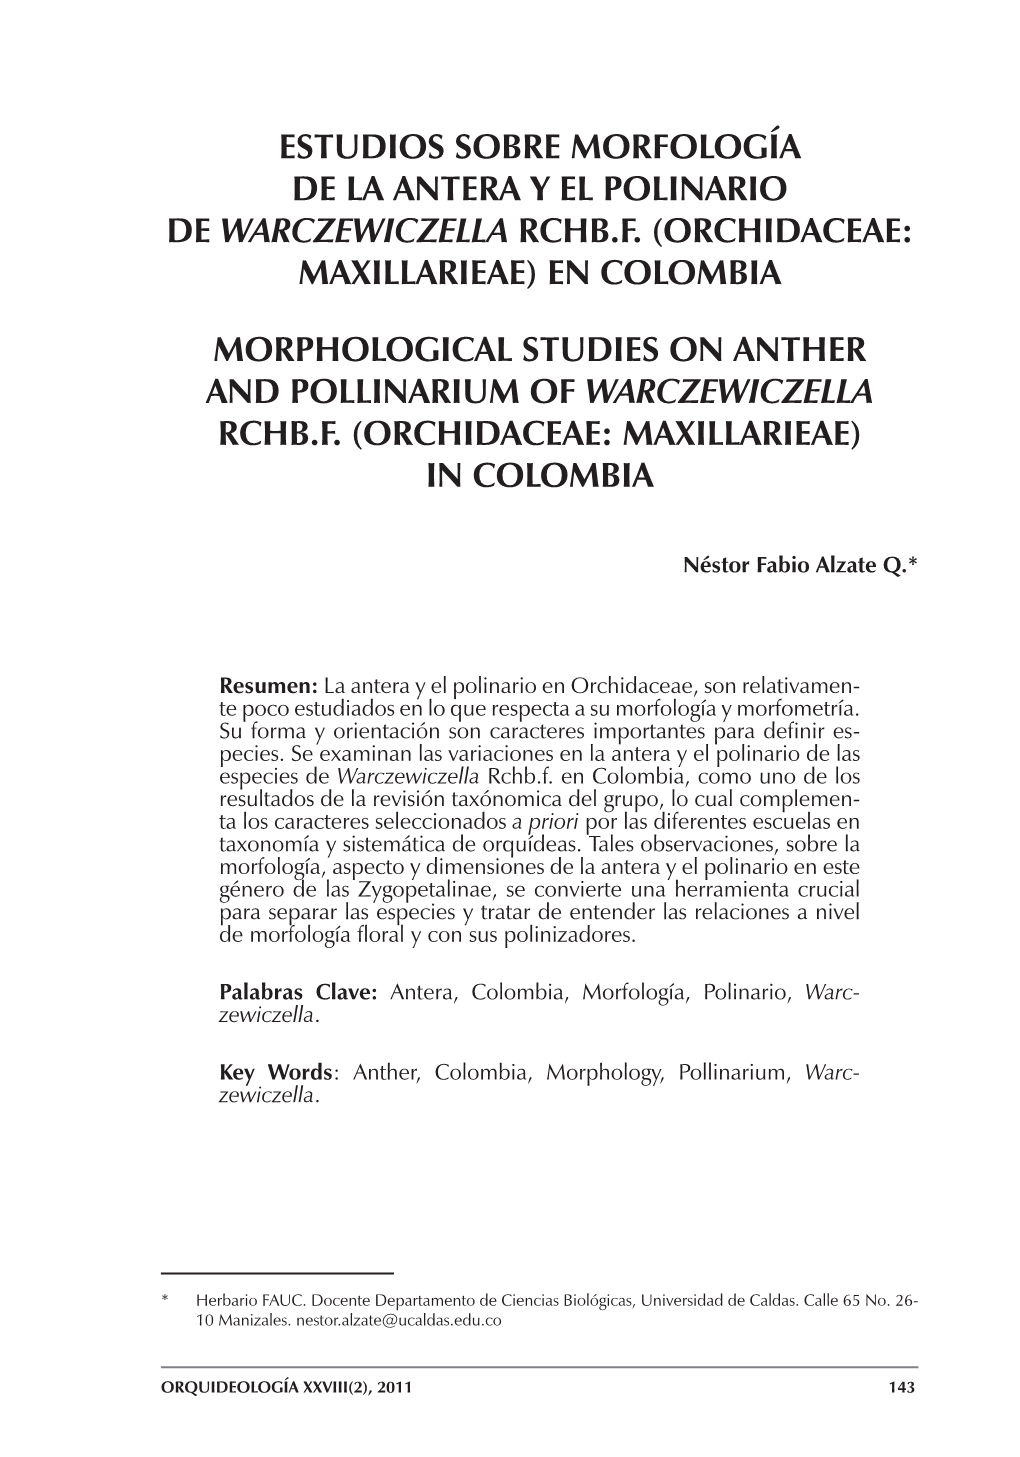 Estudios Sobre Morfología De La Antera Y El Polinario De Warczewiczella Rchb.F. (Orchidaceae: Maxillarieae) En Colombia